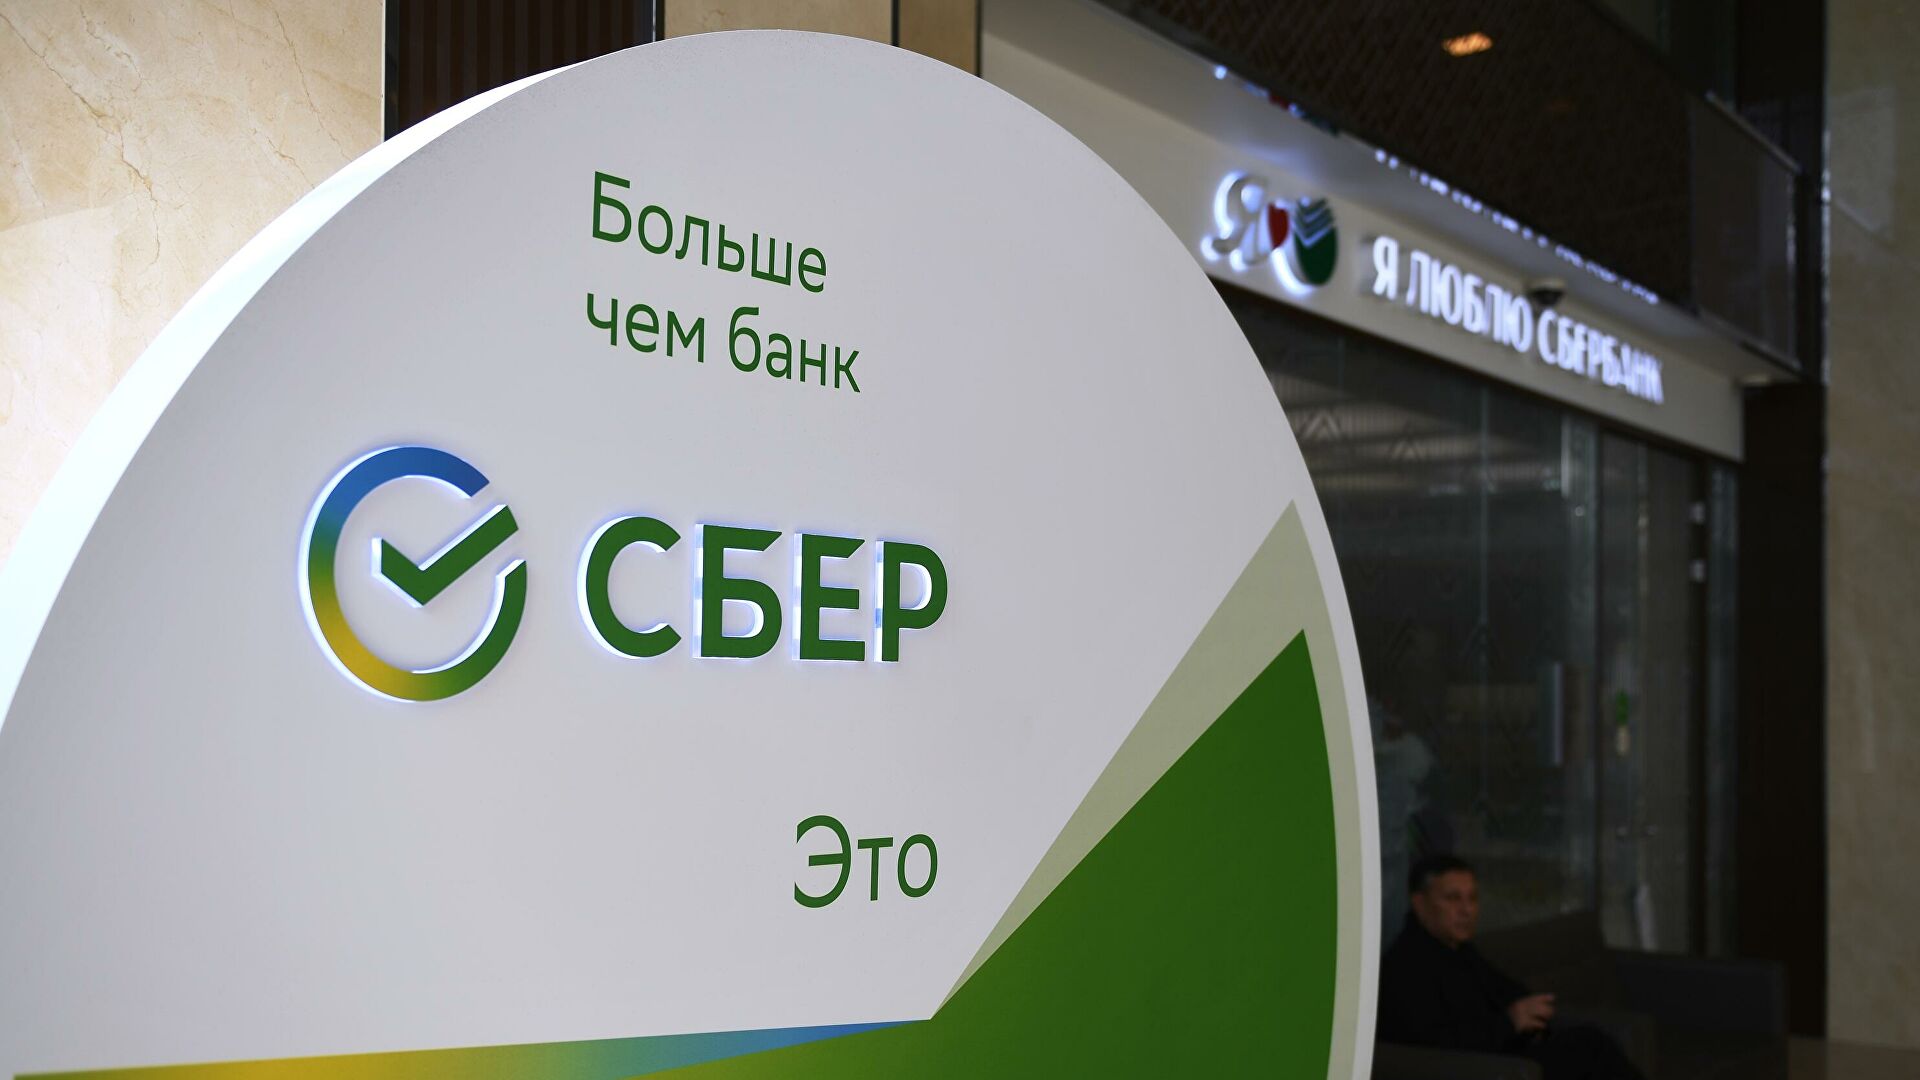 Дождались: российские банки инициируют новый сервис